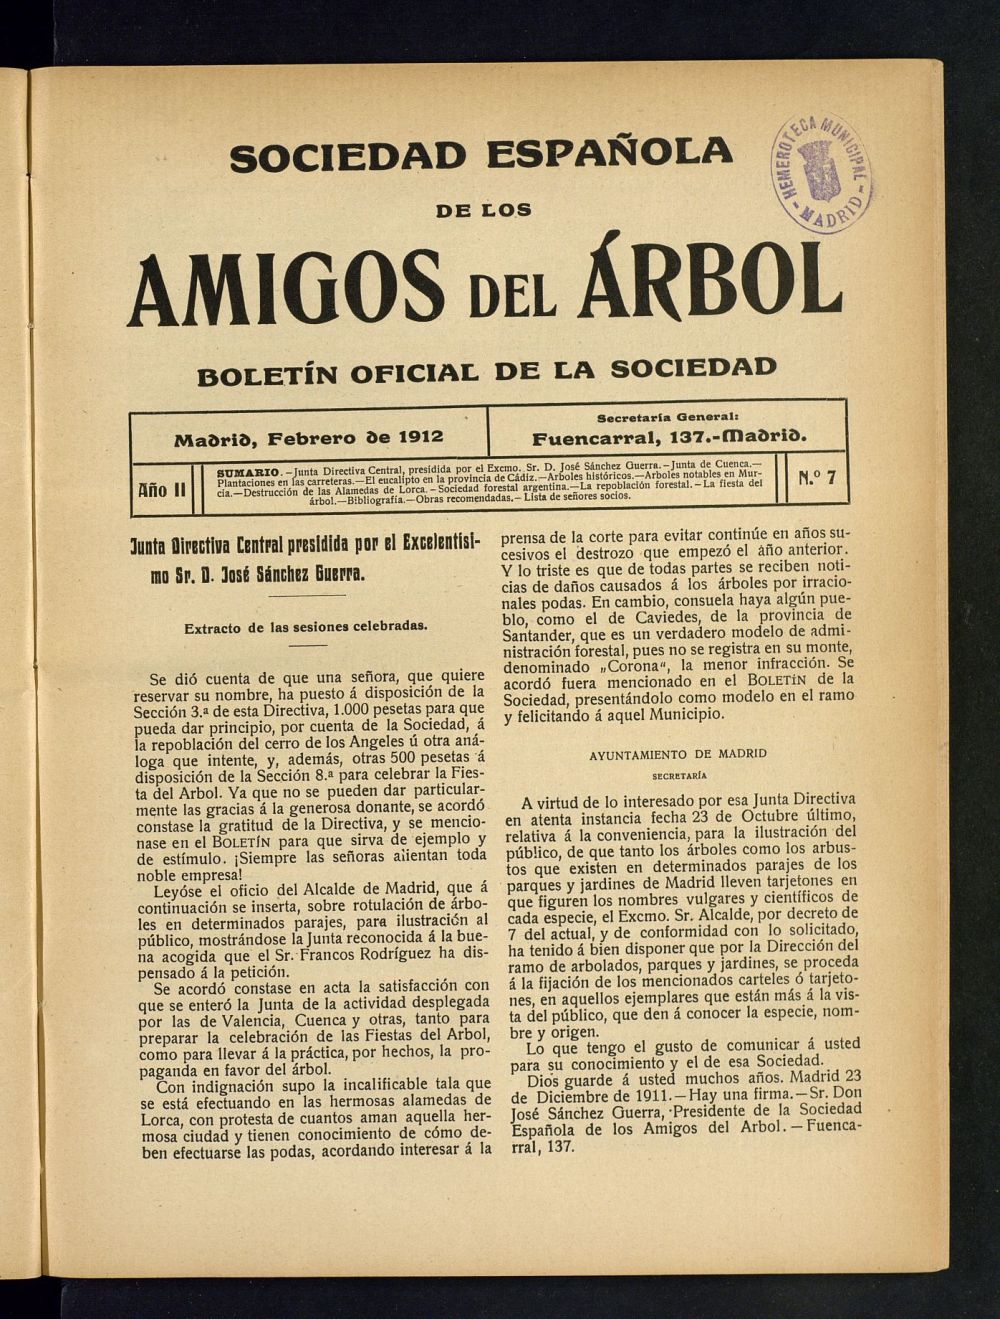 Boletn Comisin organizadora de la Sociedad Espaola de los amigos del rbol de febrero de 1912